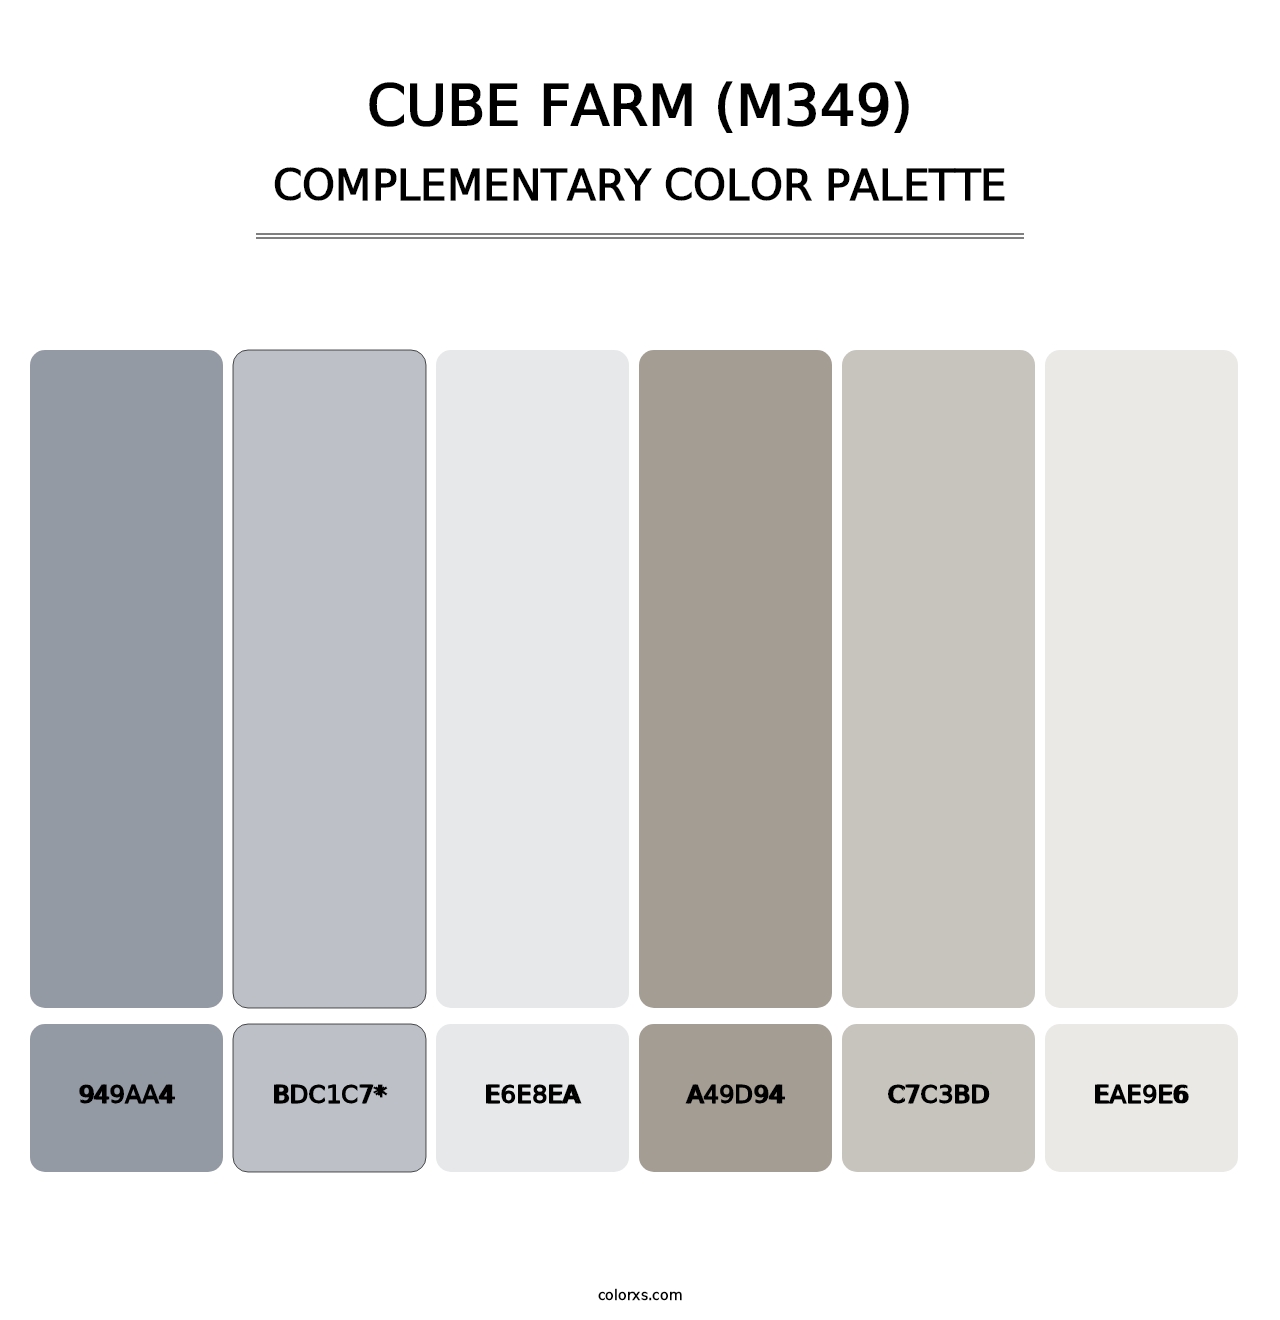 Cube Farm (M349) - Complementary Color Palette